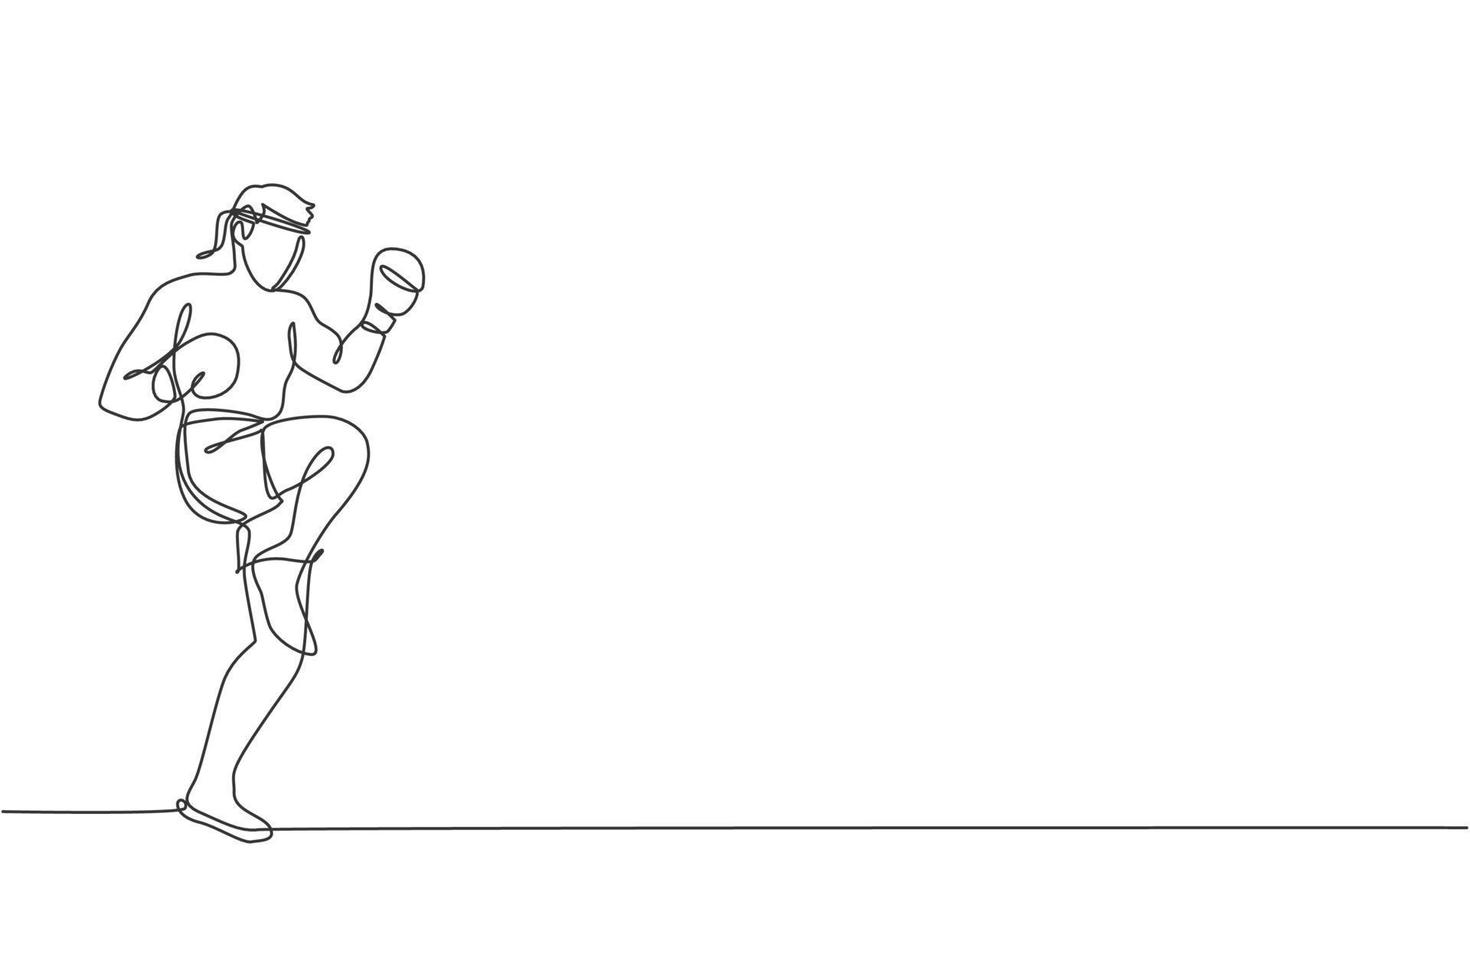 um único desenho de linha do jovem lutador de muay thai enérgico exercitando chute na ilustração vetorial de academia de ginástica. conceito de esporte de boxe tailandês combativo. design moderno de desenho de linha contínua vetor